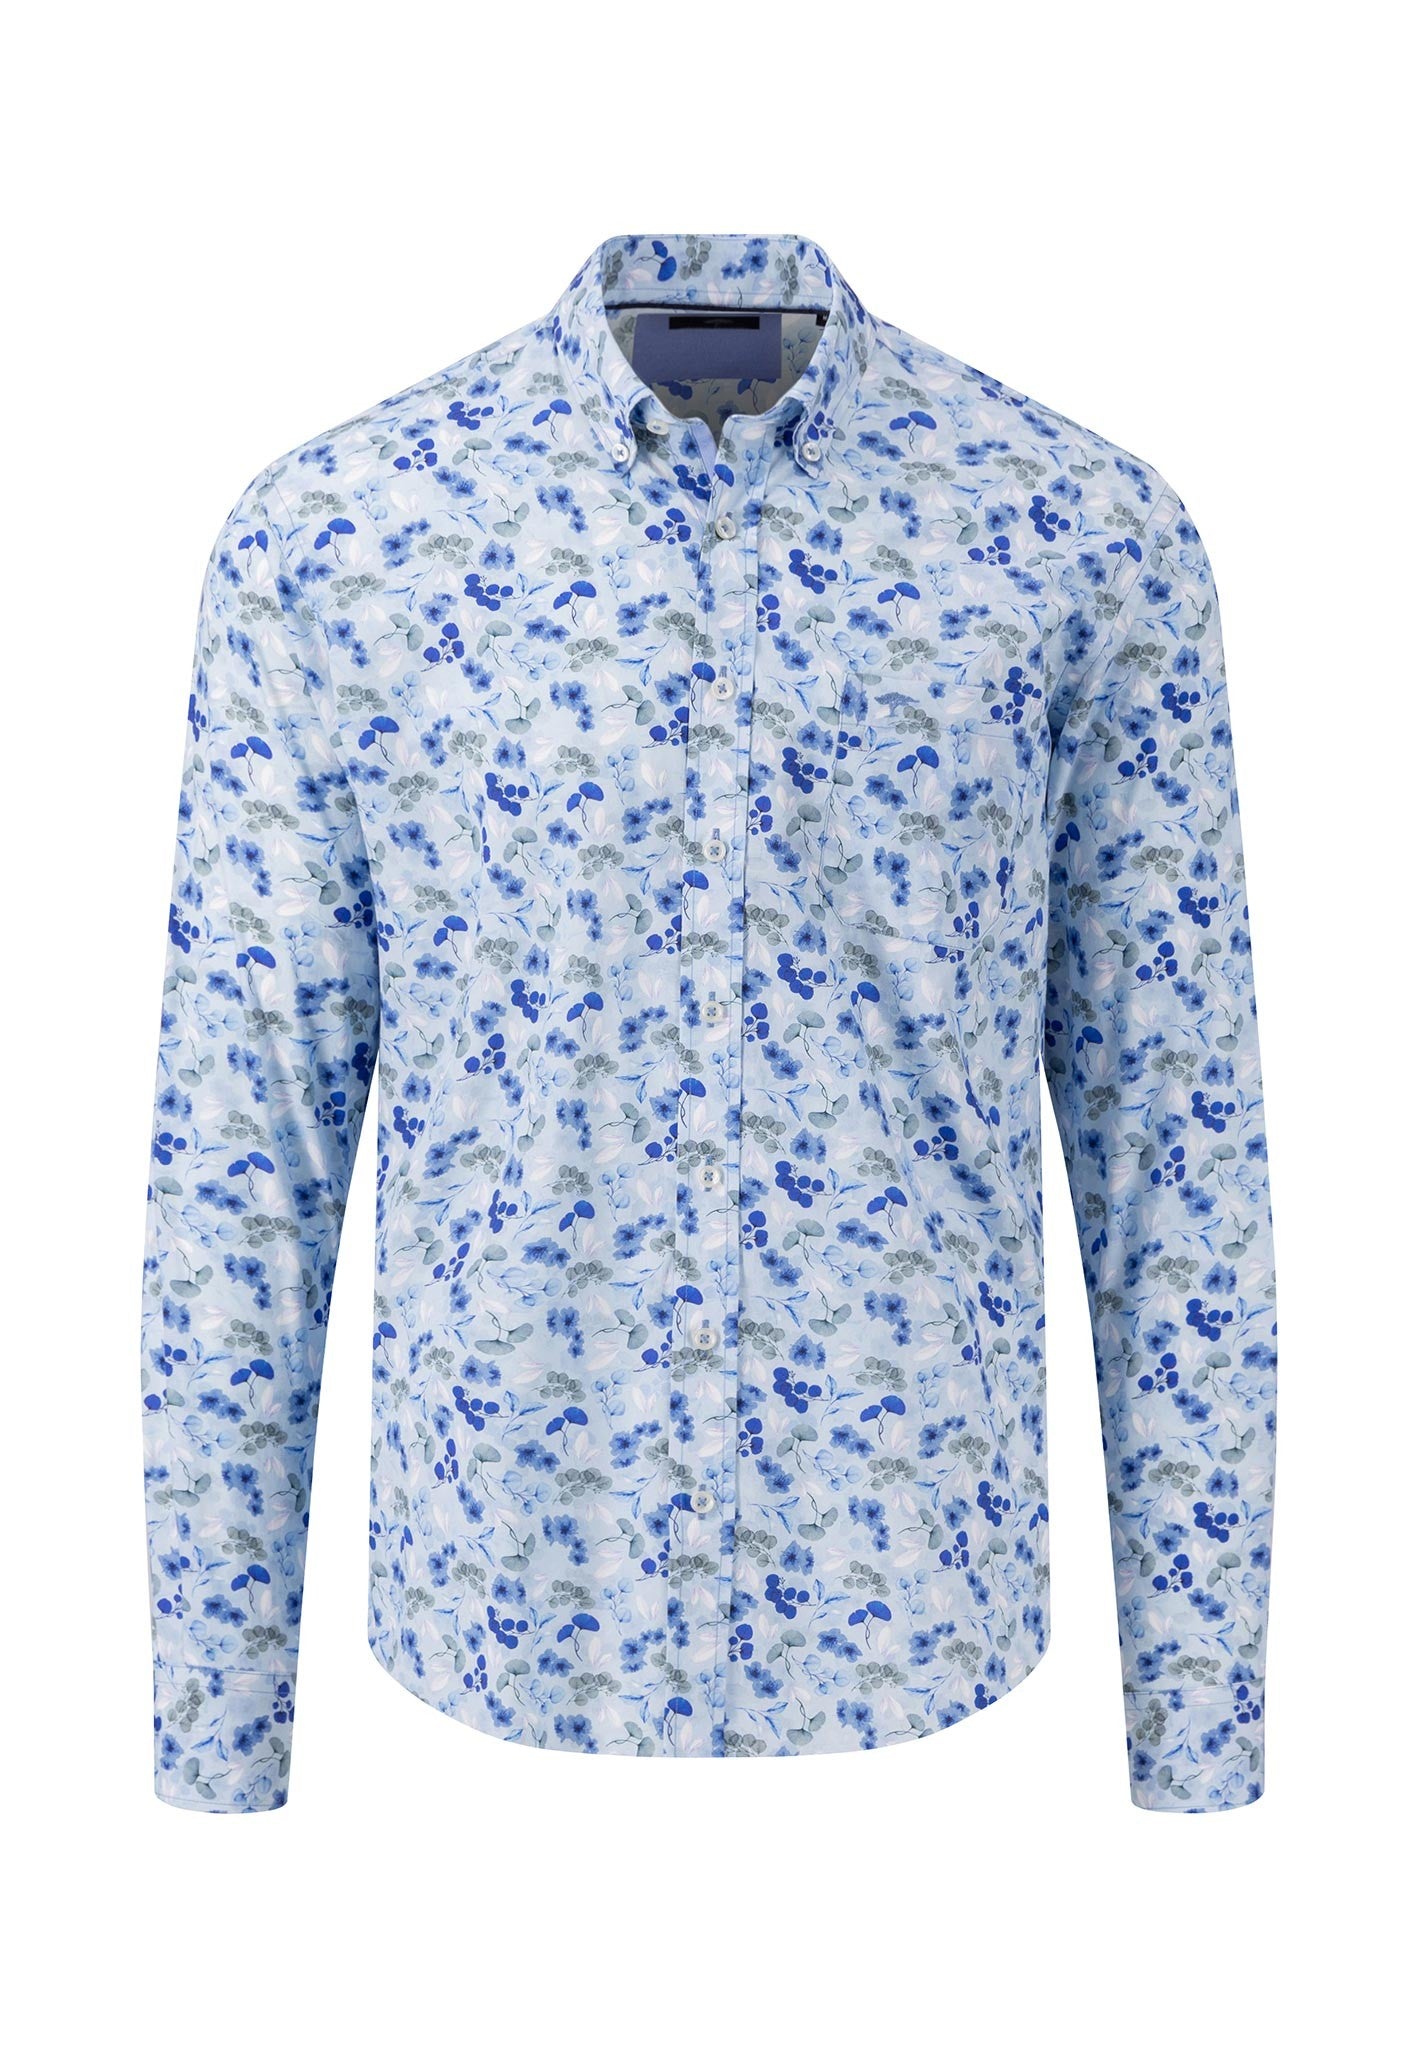 Fynch Hatton Premium Cotton Summer Prints Shirt Blue